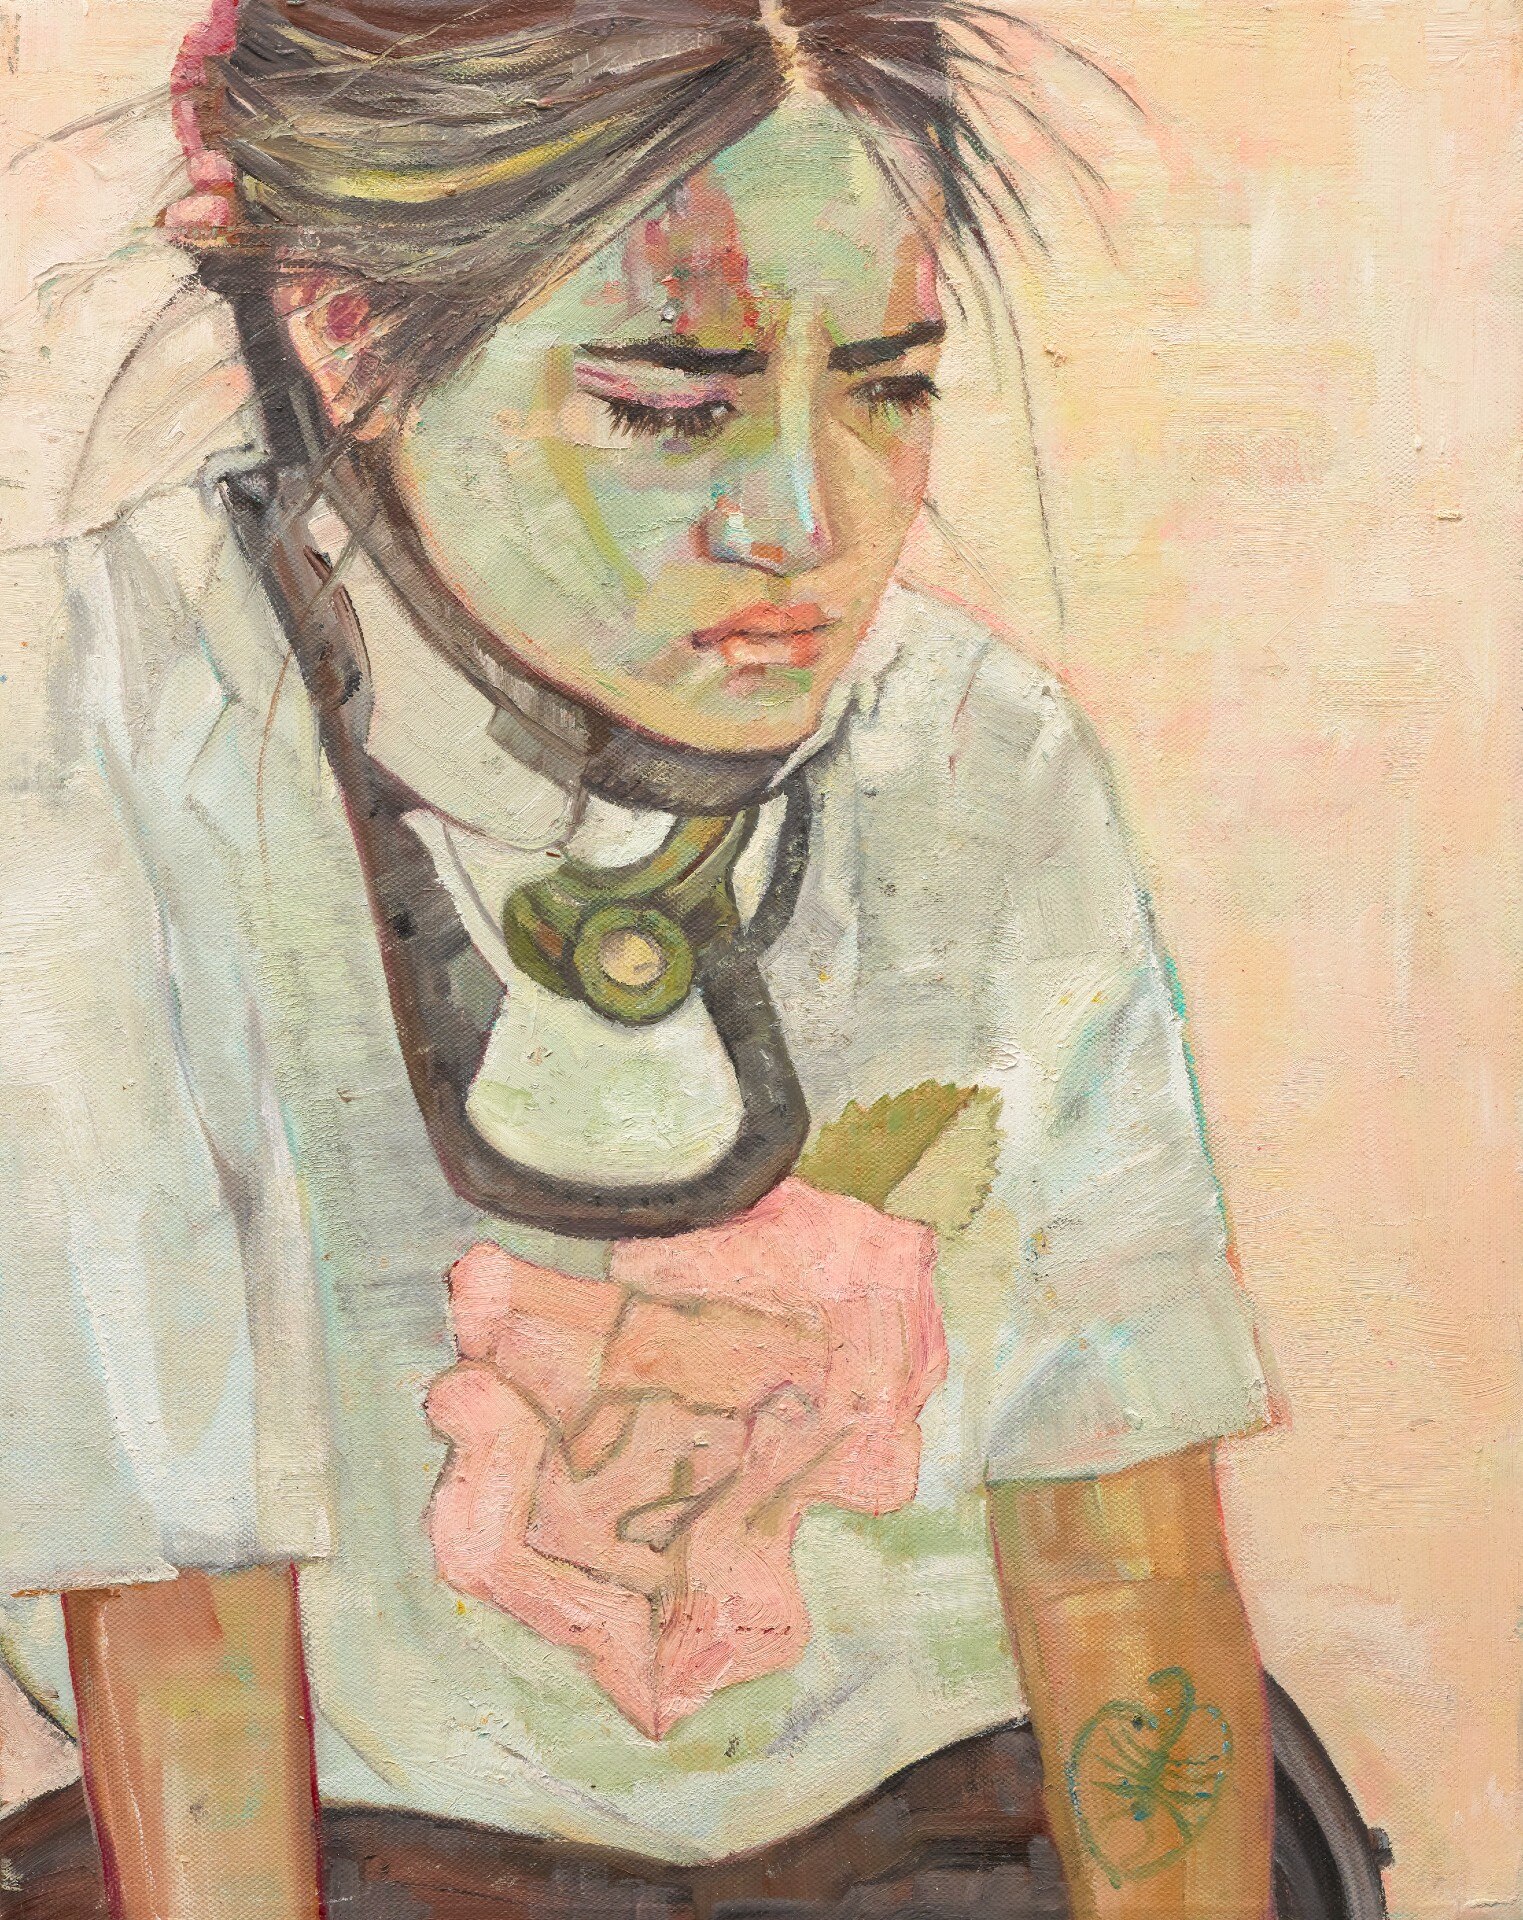 A painting of artist Visaya Hoffie in a neck brace, looking downcast